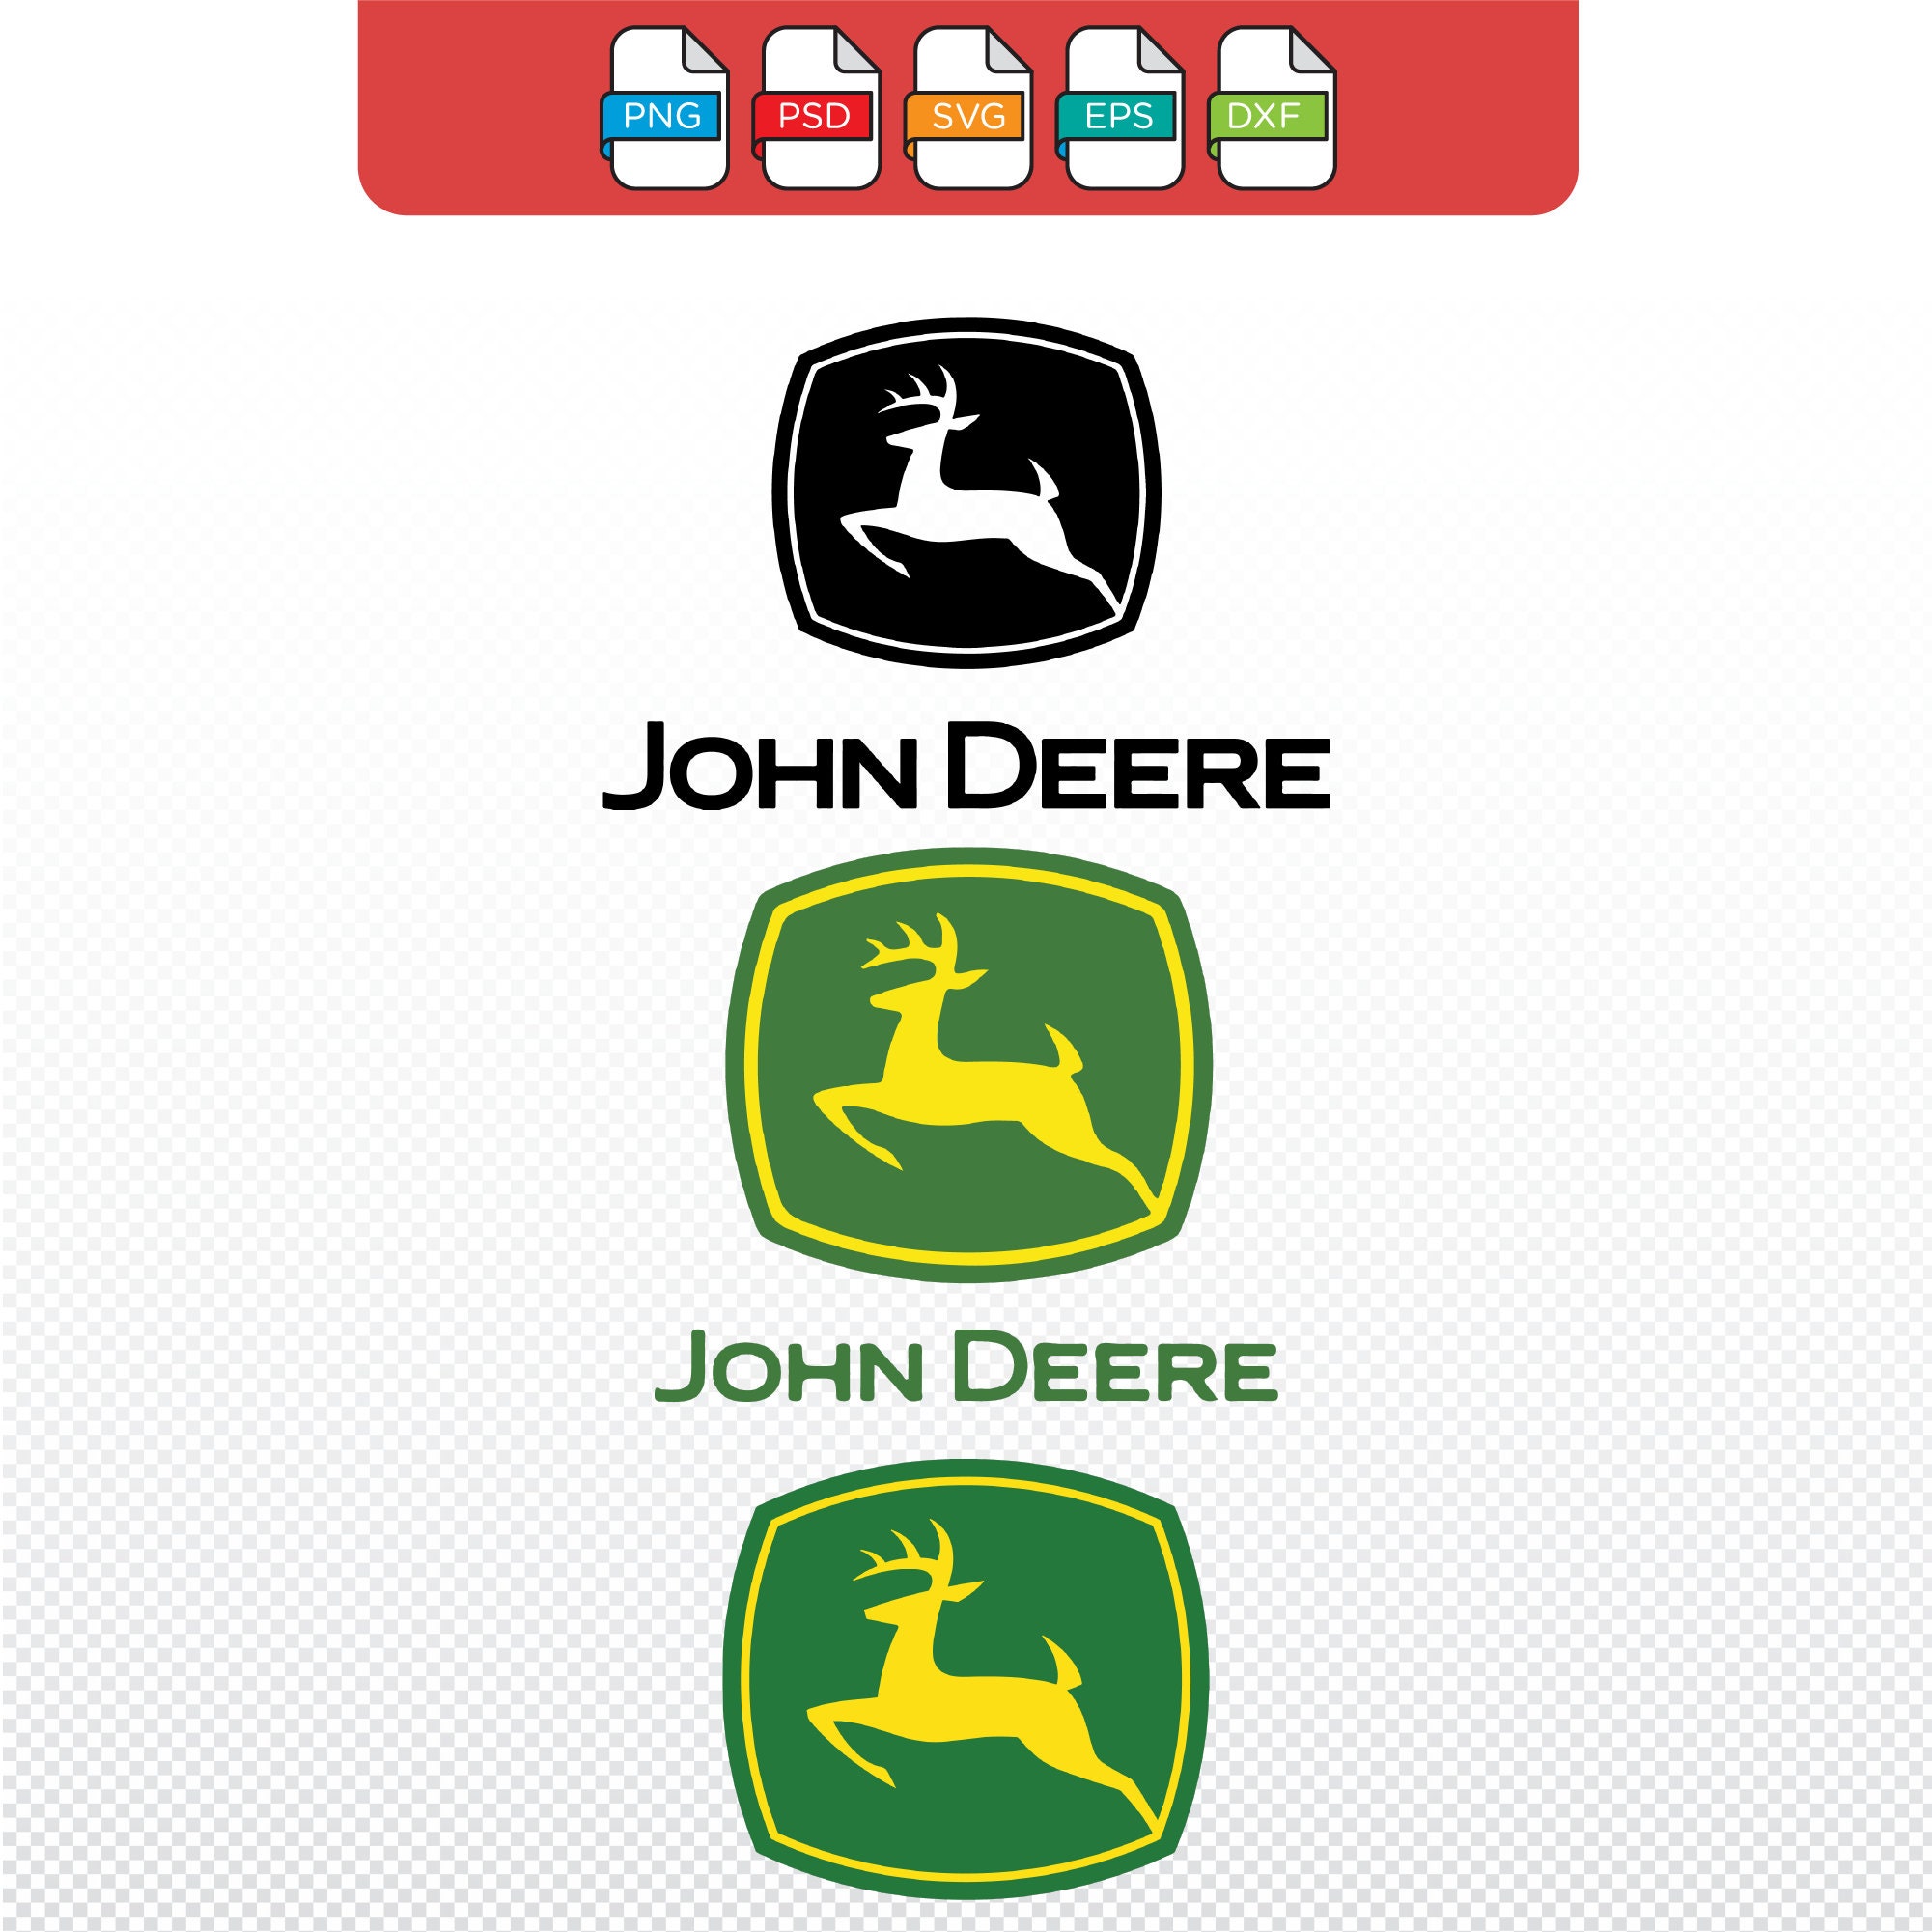 John deere emblem - .de